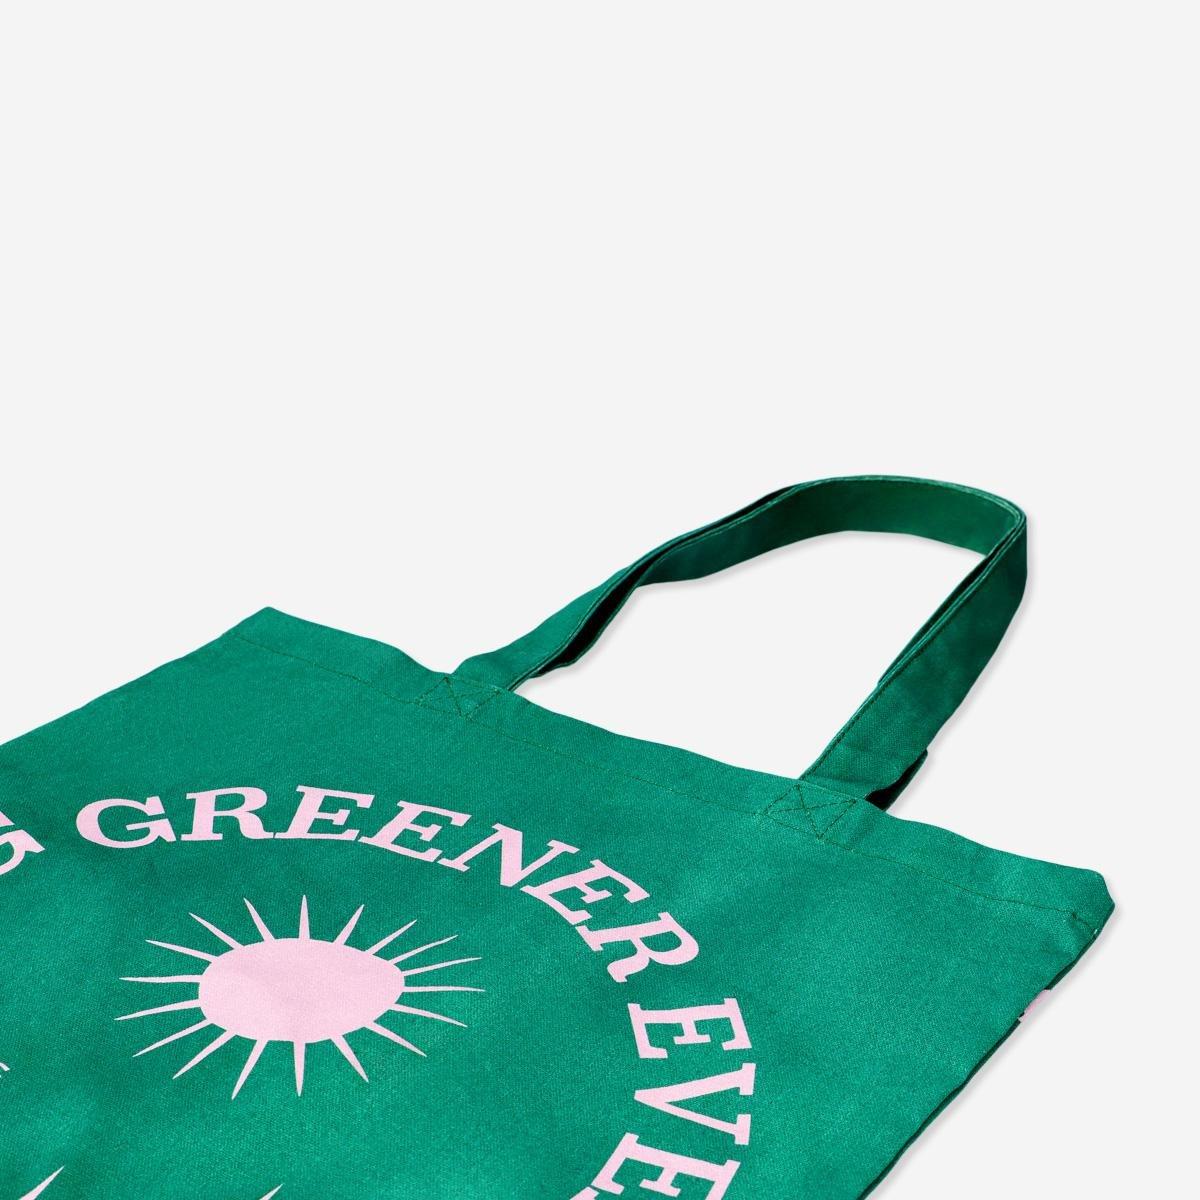 Green tote bag